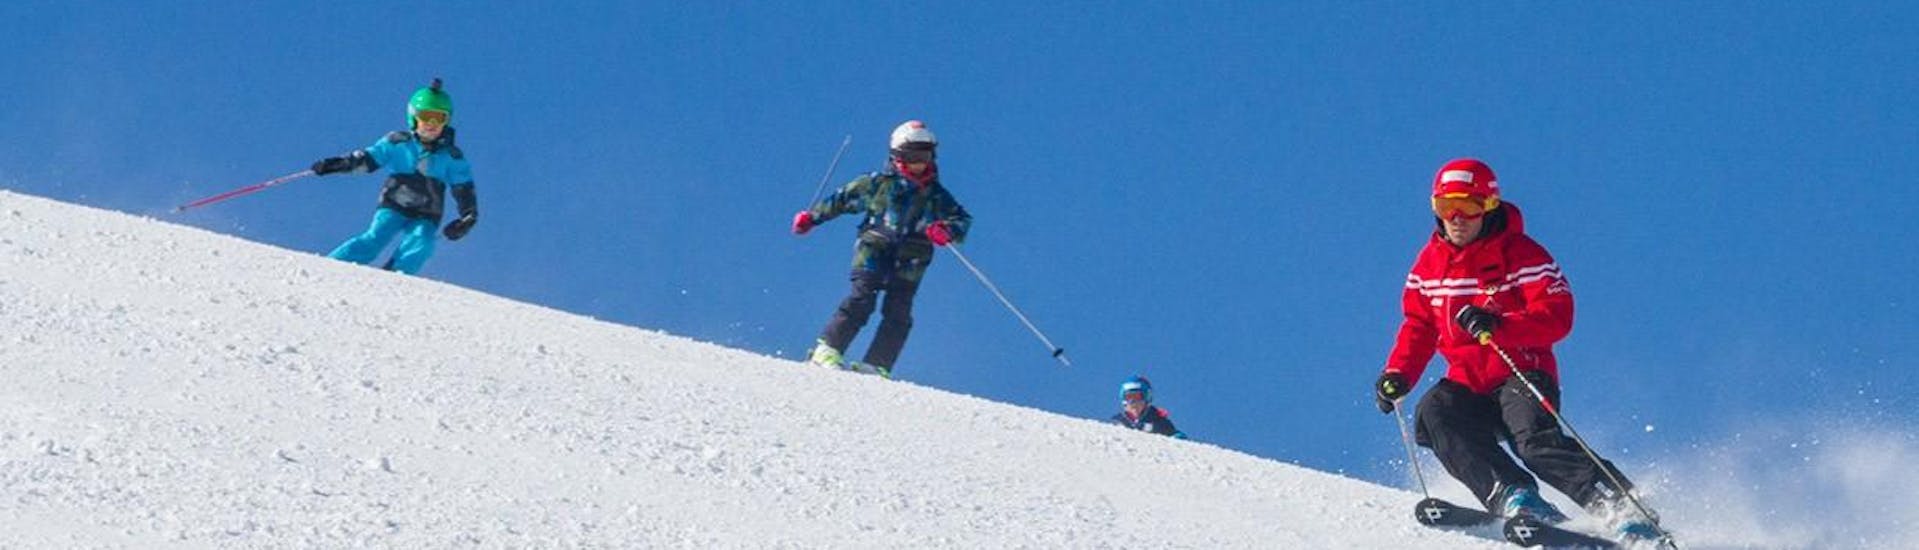 Le moniteur de ski de l'école de ski Sertorelli Bormio skie avec les enfants du Cours de ski Enfants (4-12 ans) avec Expérience - Demi-journée.